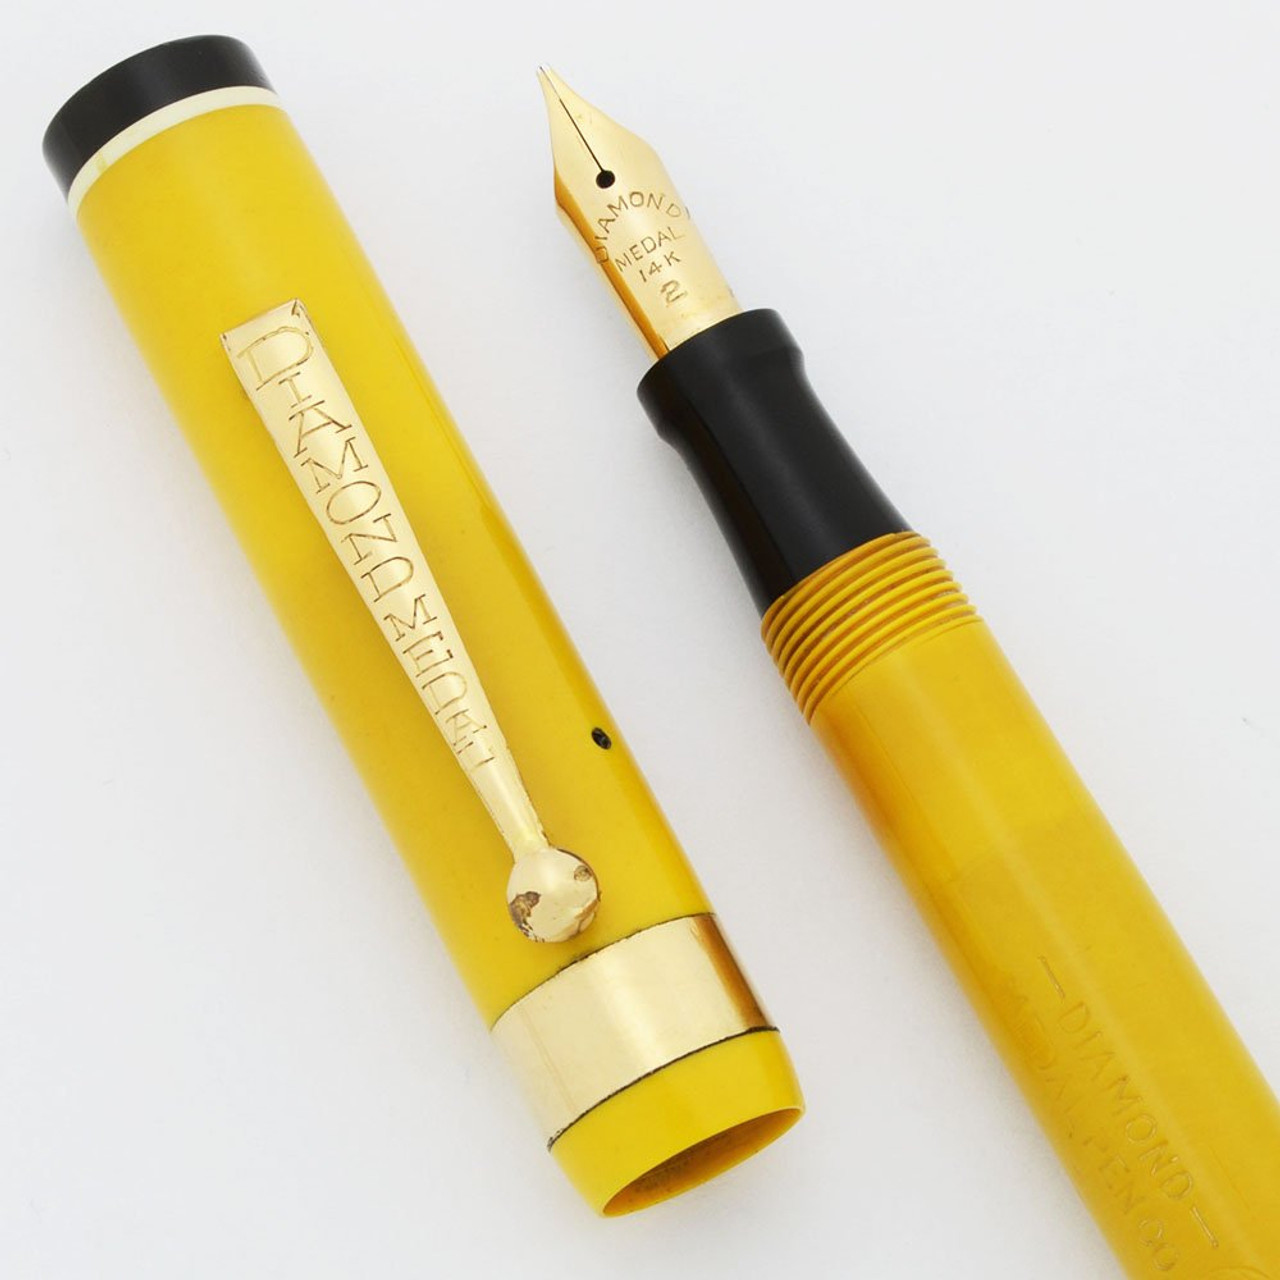 Diamond Medal Standard Fountain Pen -- Full Size Slender, Yellow w White Bands, Medium 14k Nib (Excellent, Restored)